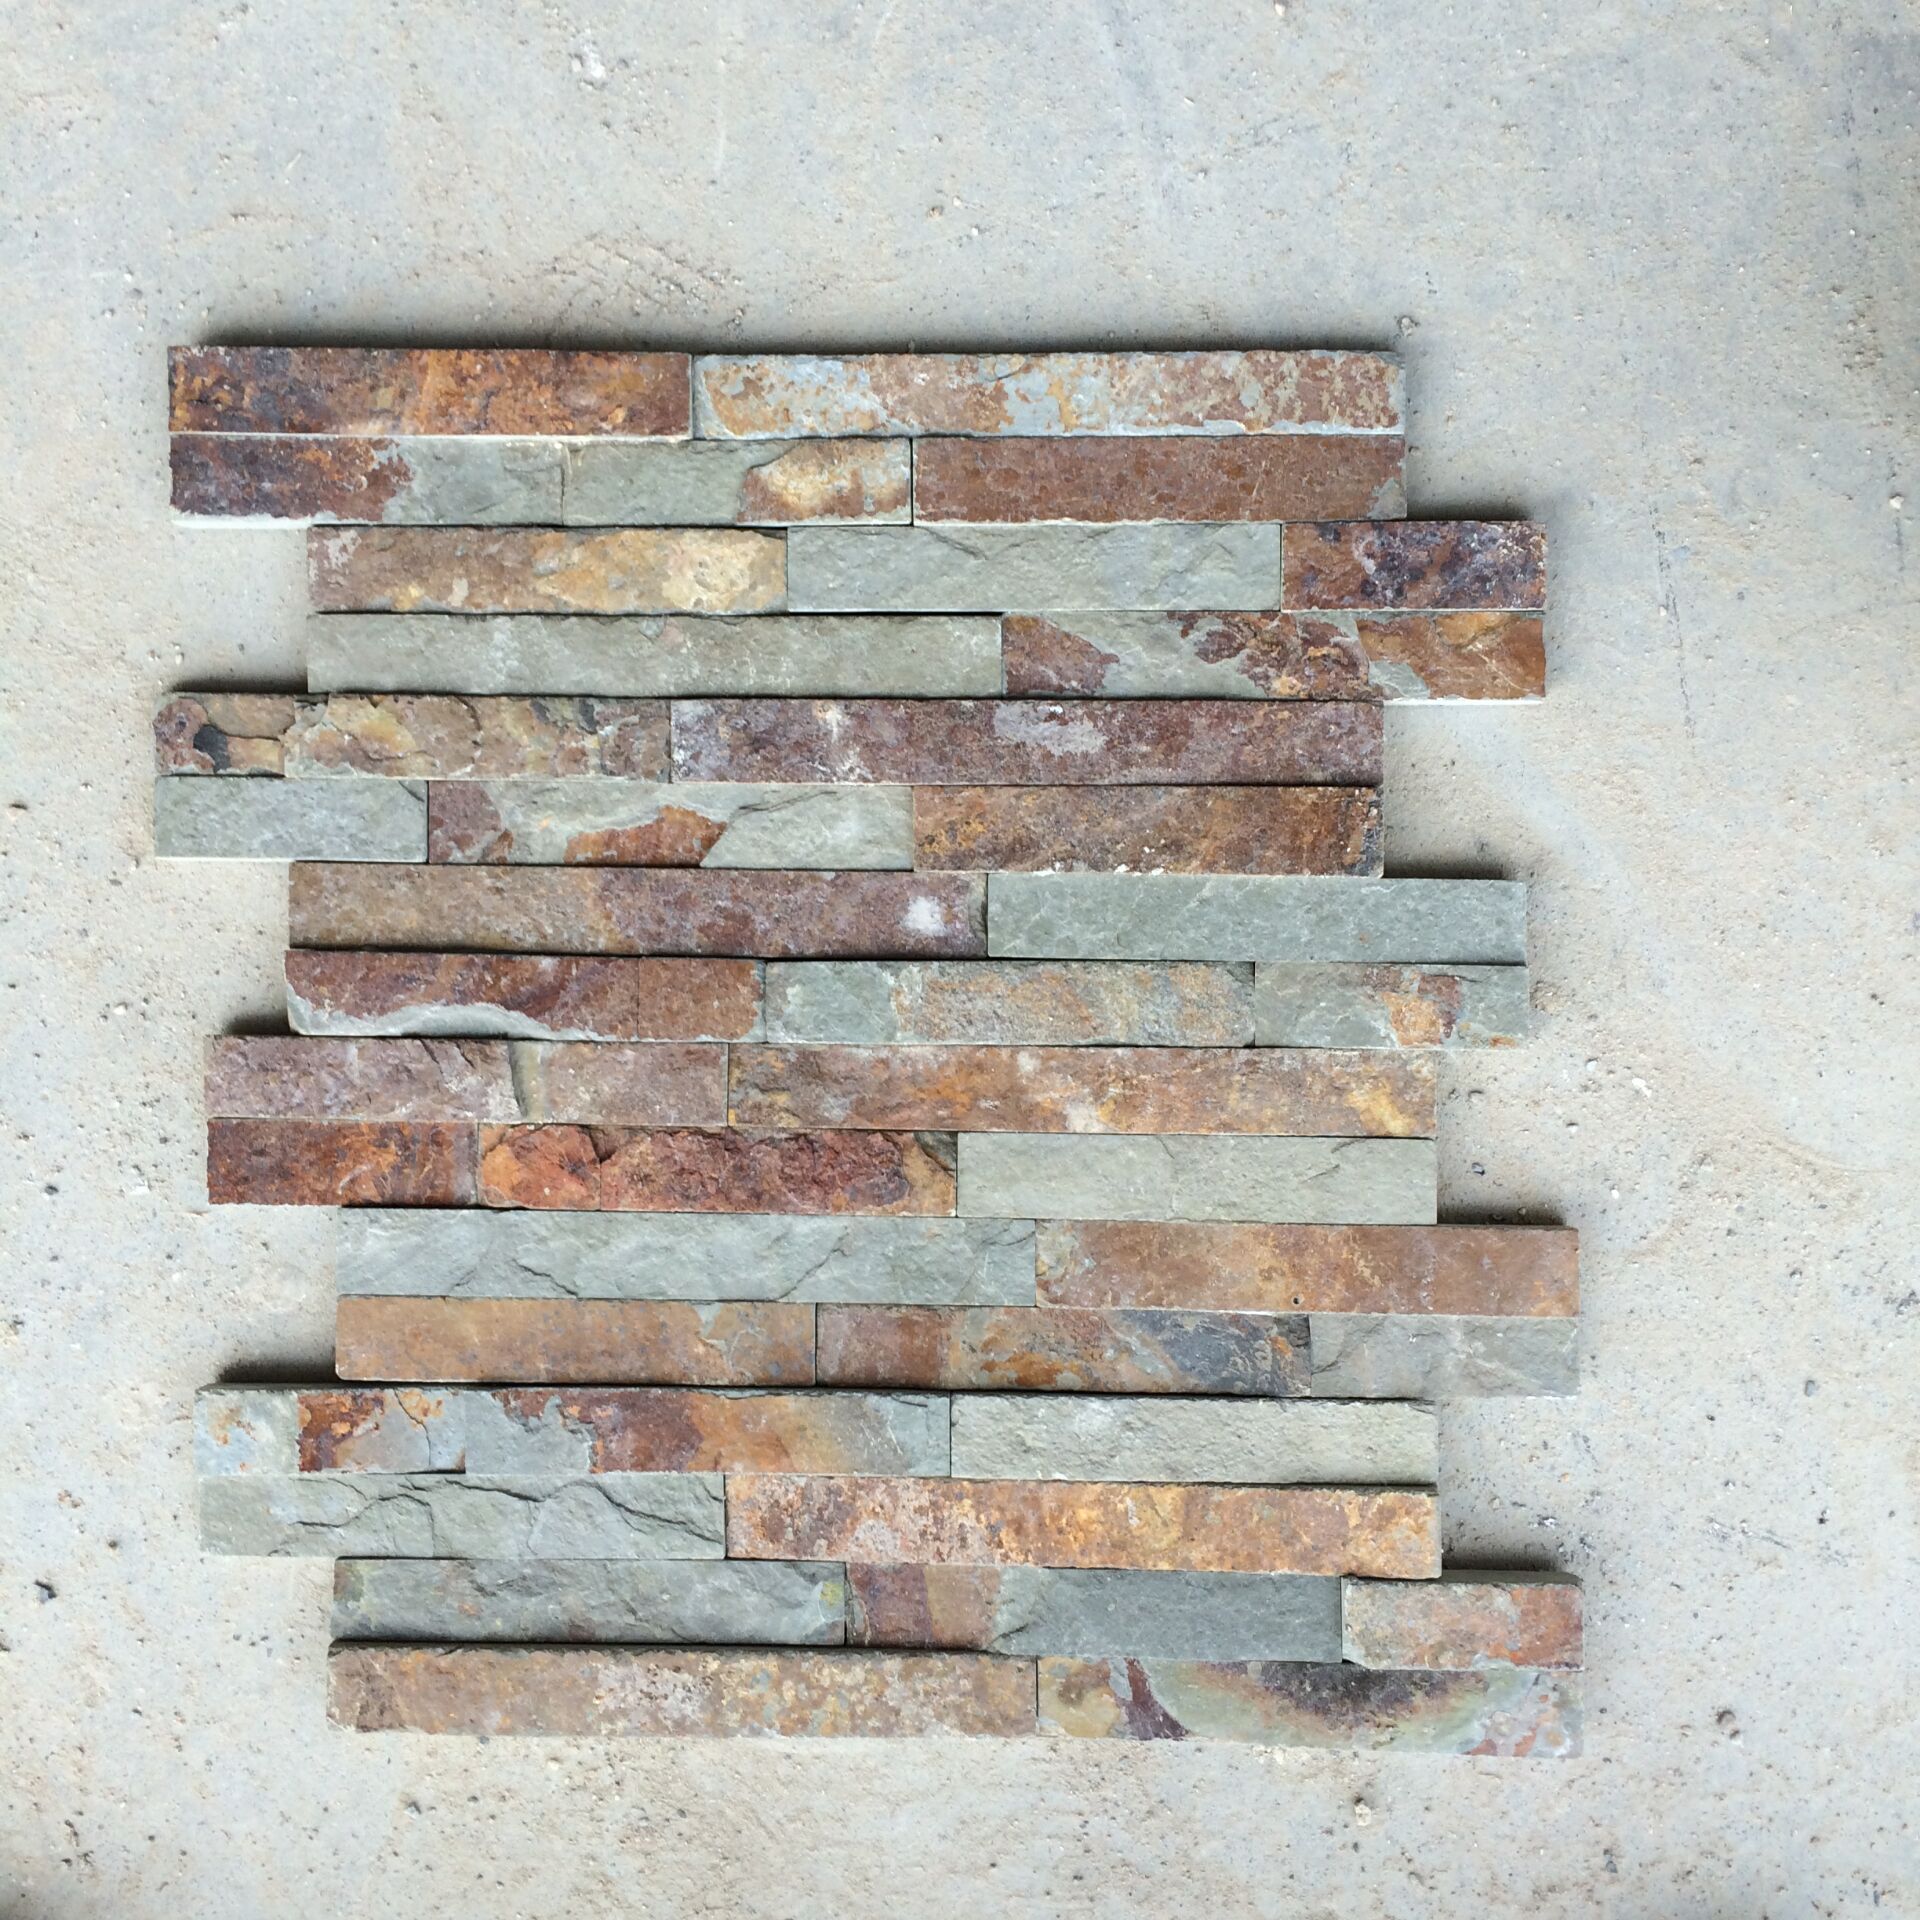 RSC 002 piedra cultural pizarra oxidada natural
